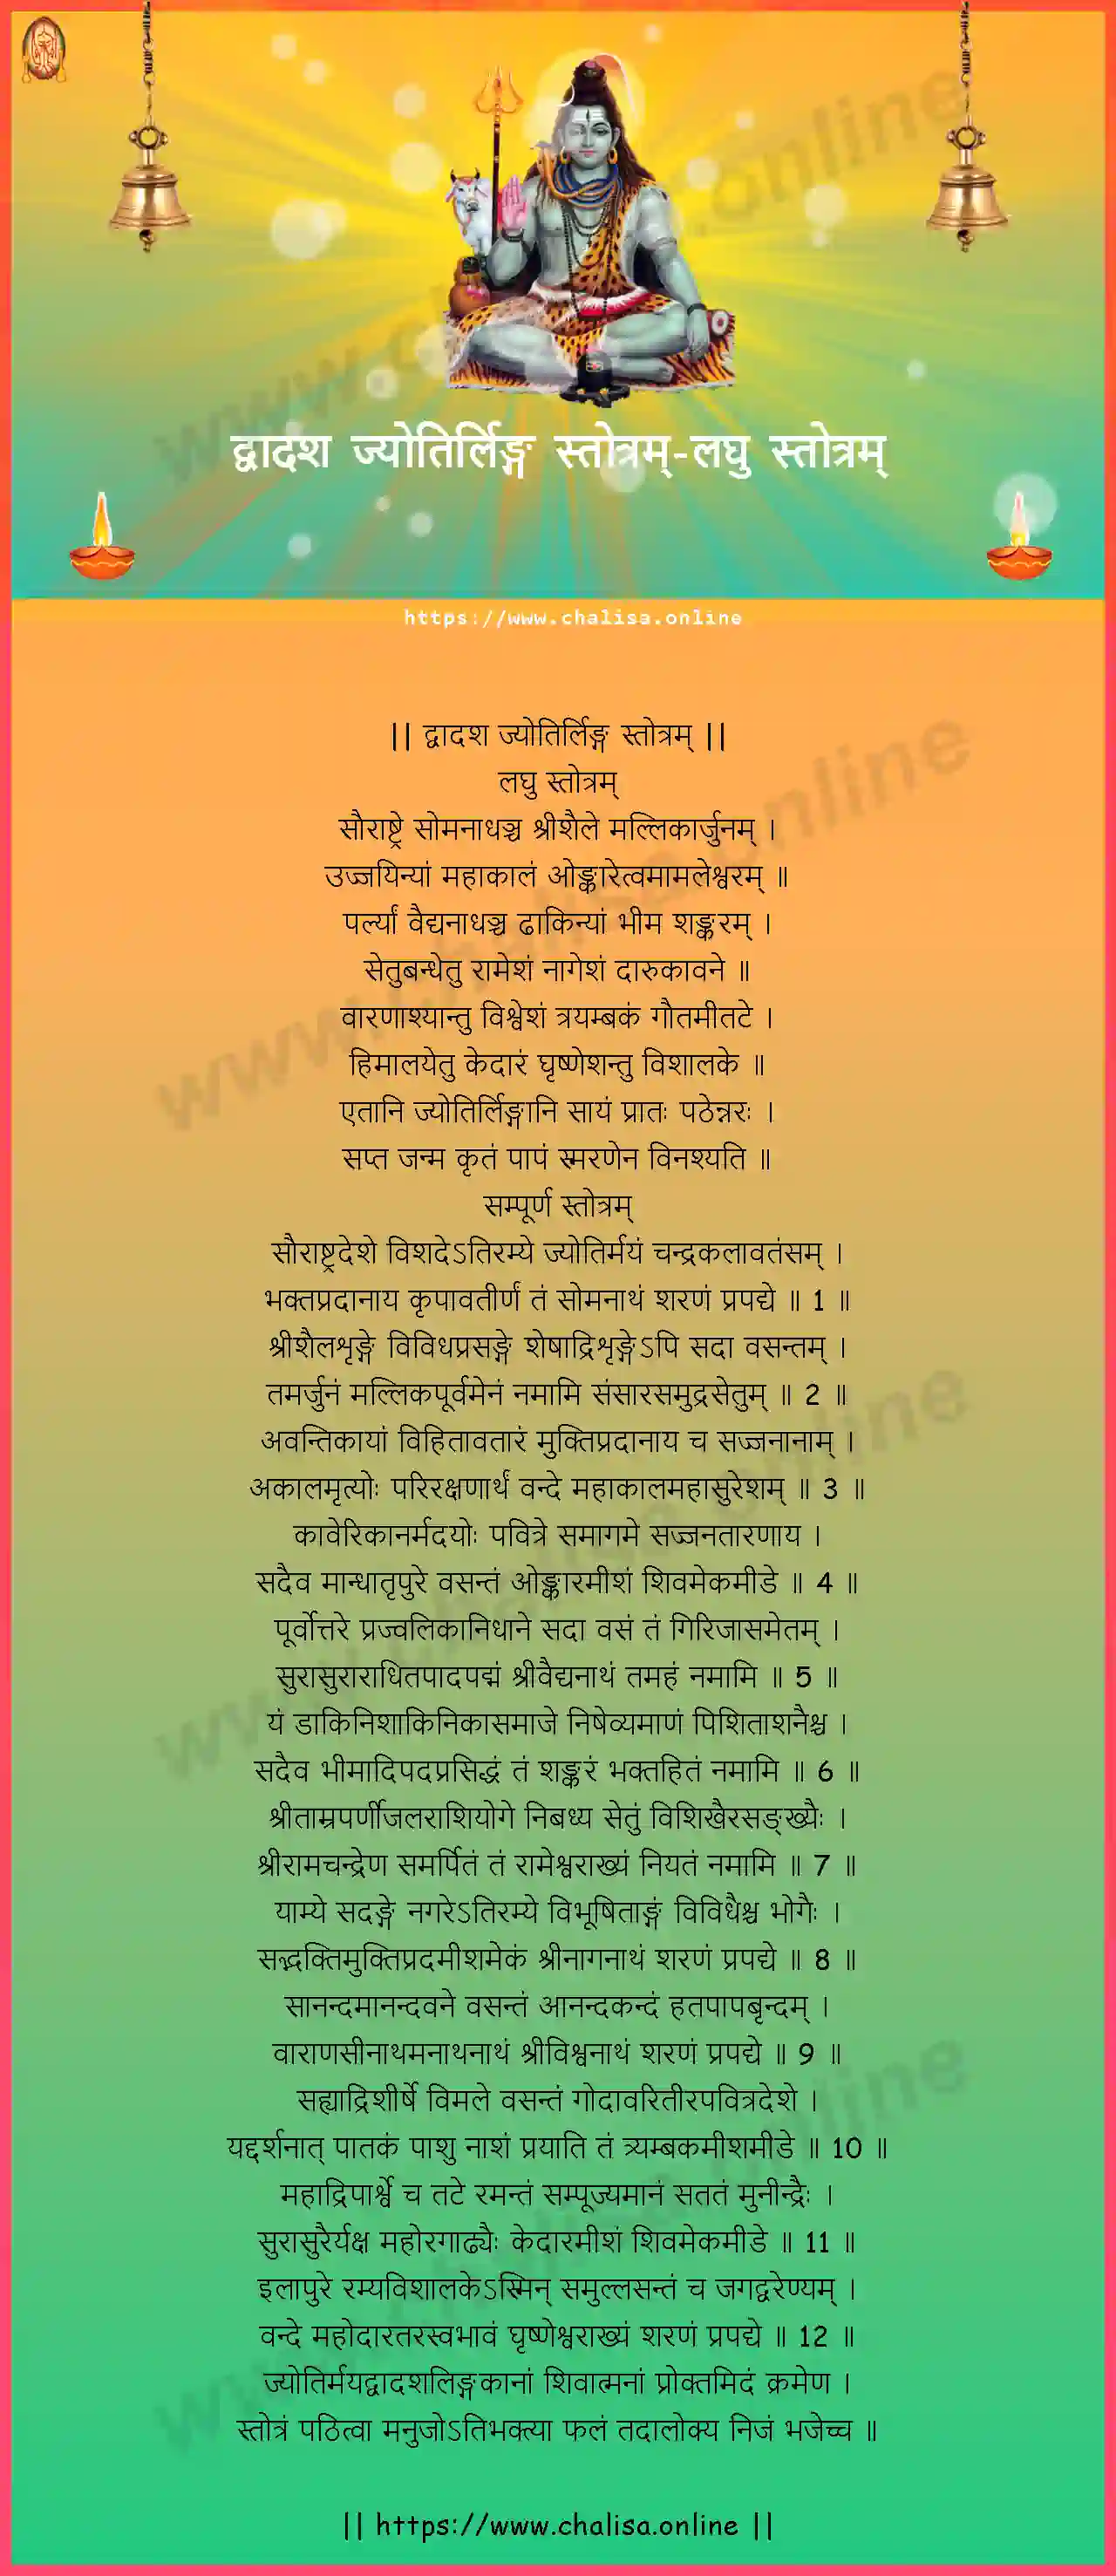 laghu-stotram-dwadasa-jyotirlinga-stotram-devanagari-devanagari-lyrics-download